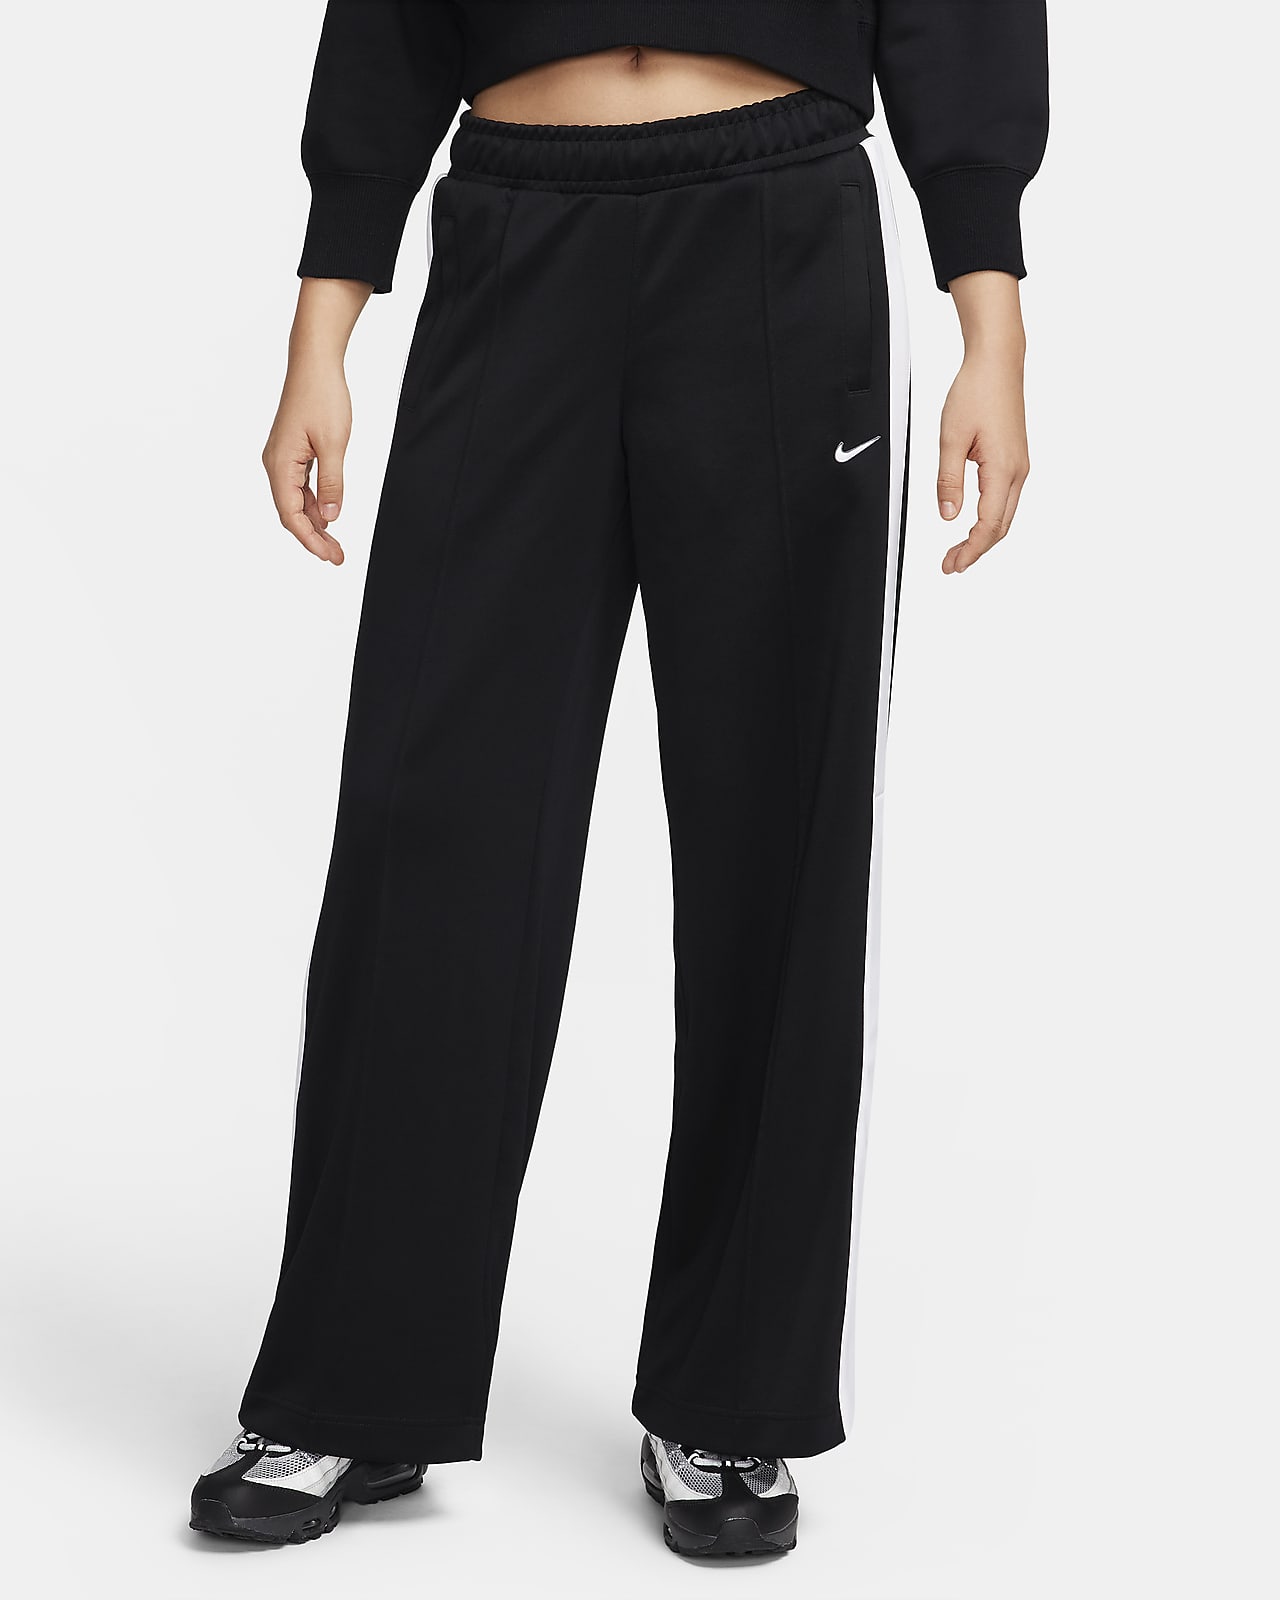 Nike Sportswear Women's Trousers. Nike CA